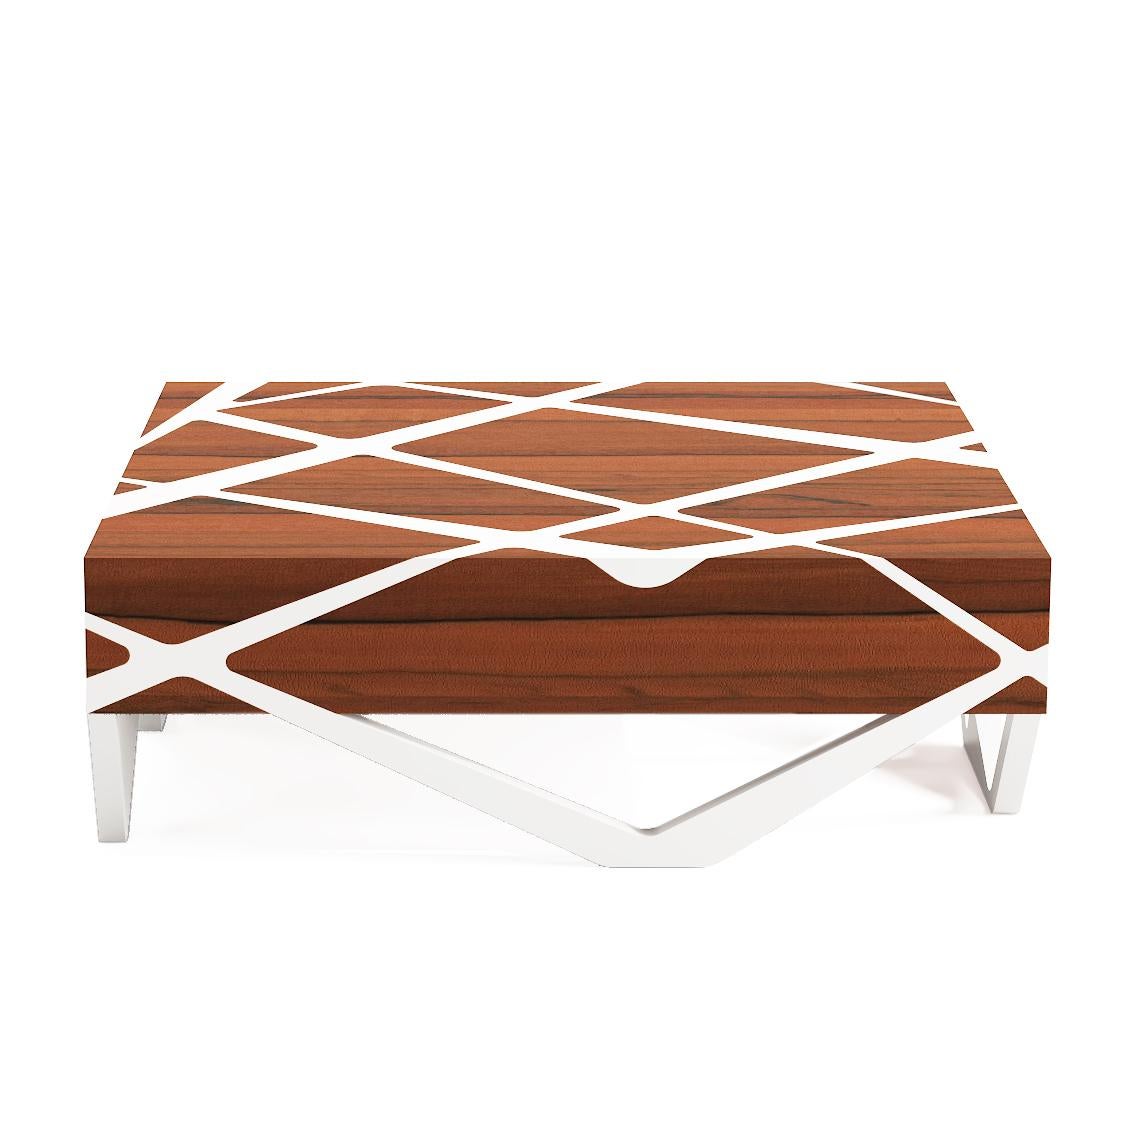 Inspirée par les arbres Ceiba sacrés de La Havane, cette élégante table basse est fabriquée à la main à partir de placages de bois de noyer soigneusement sélectionnés. Parfaites pour les maisons contemporaines et traditionnelles, les combinaisons